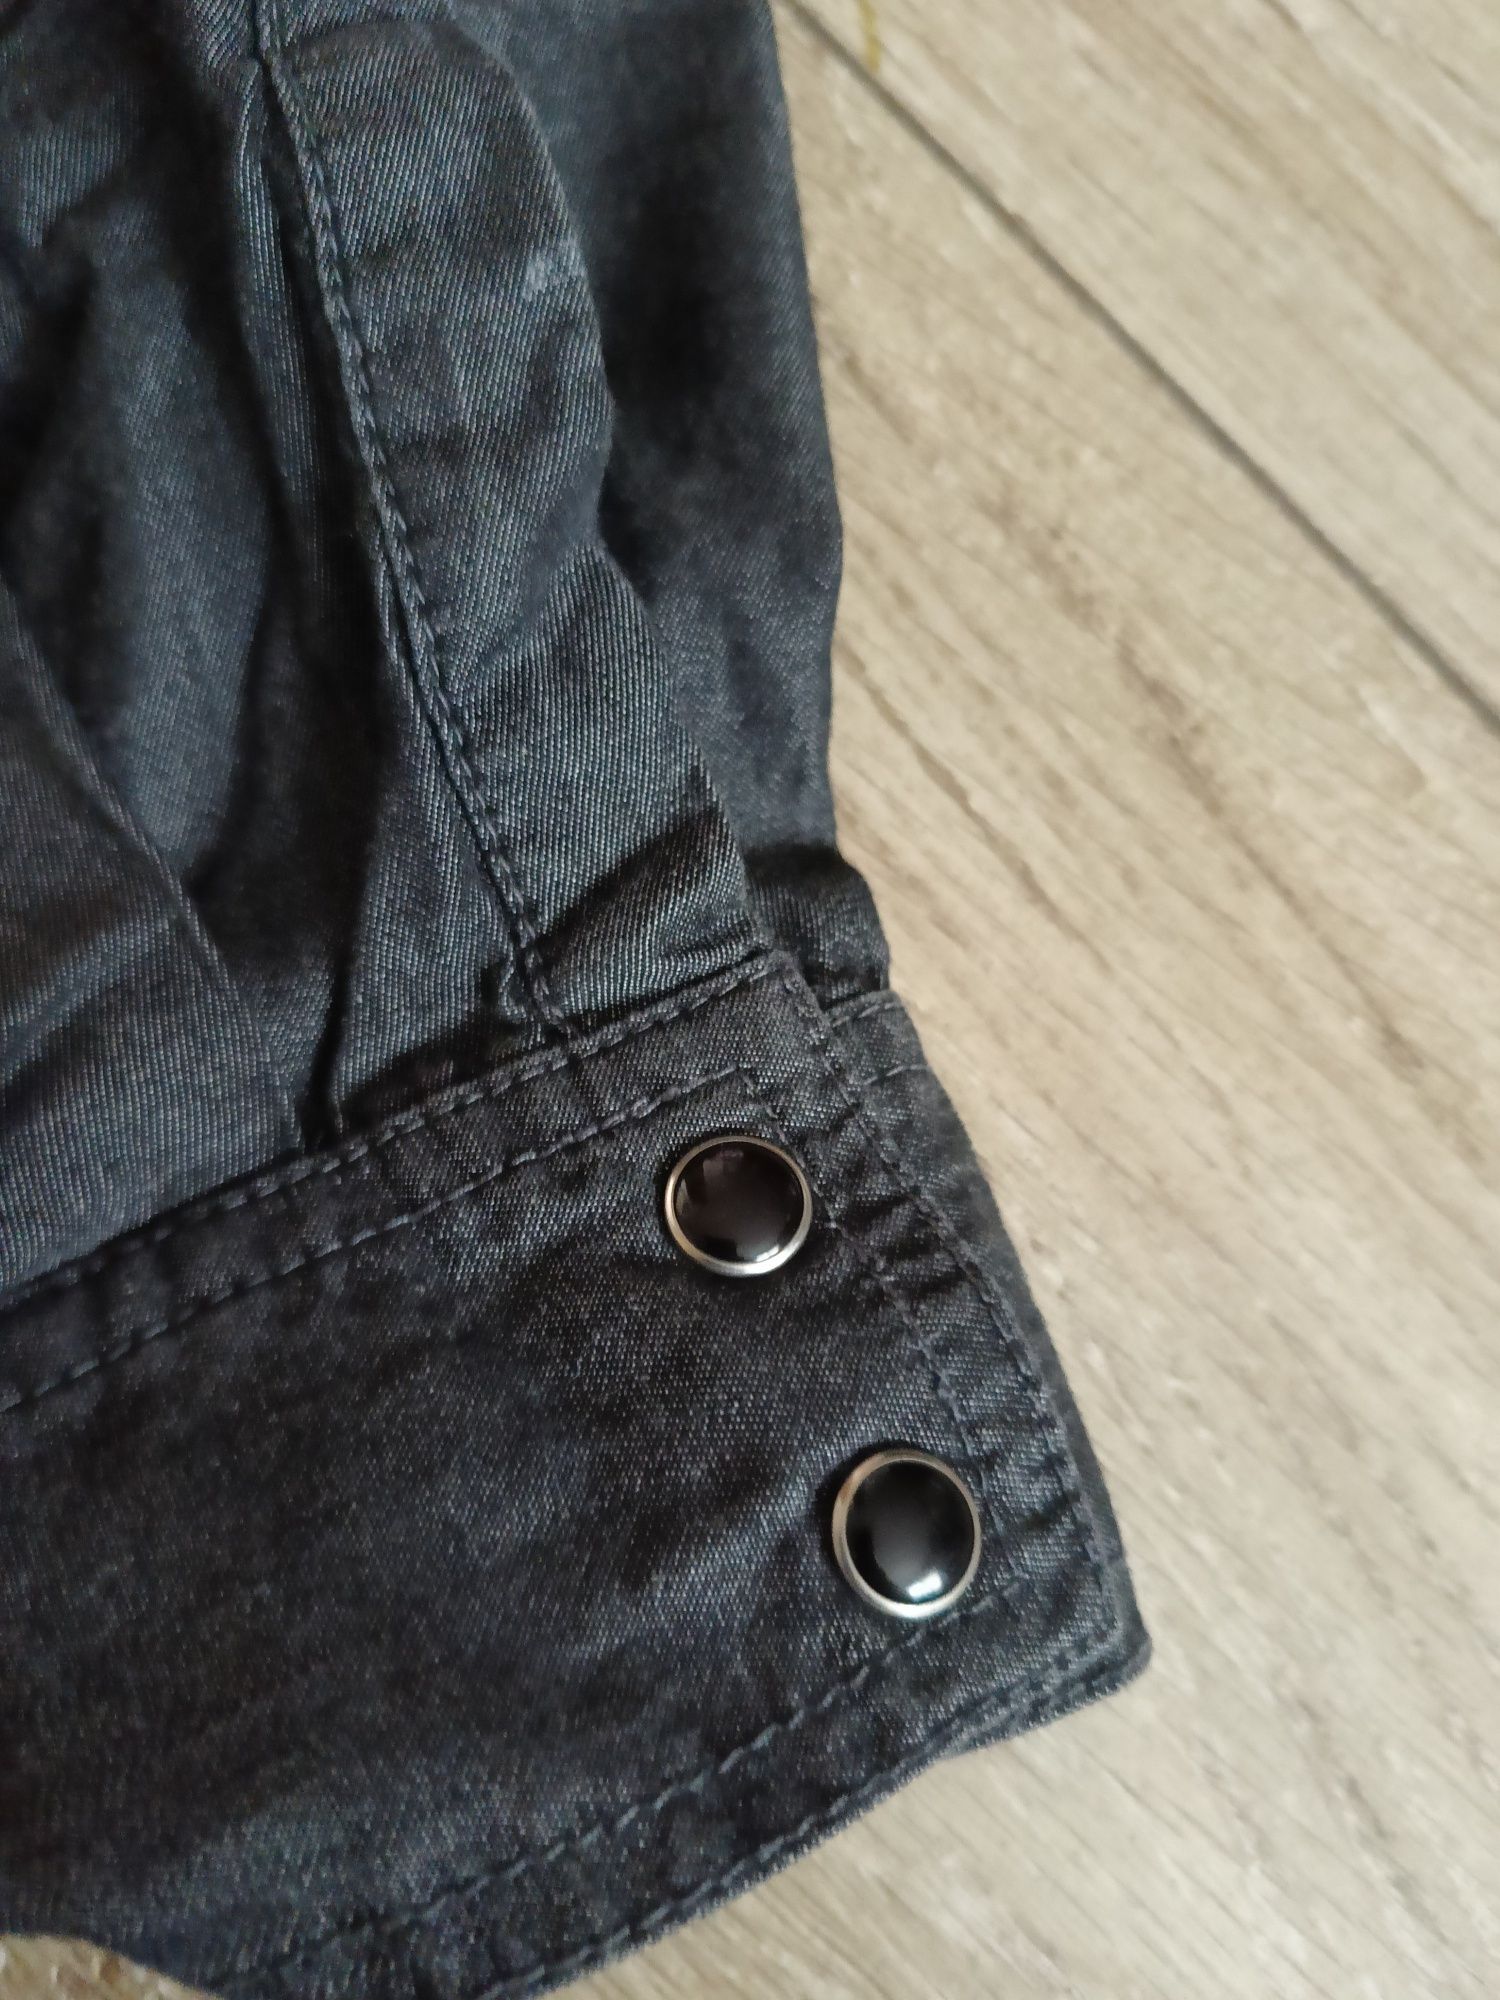 Koszula dżinsowa jeans damska wiosenna czarna 42 44